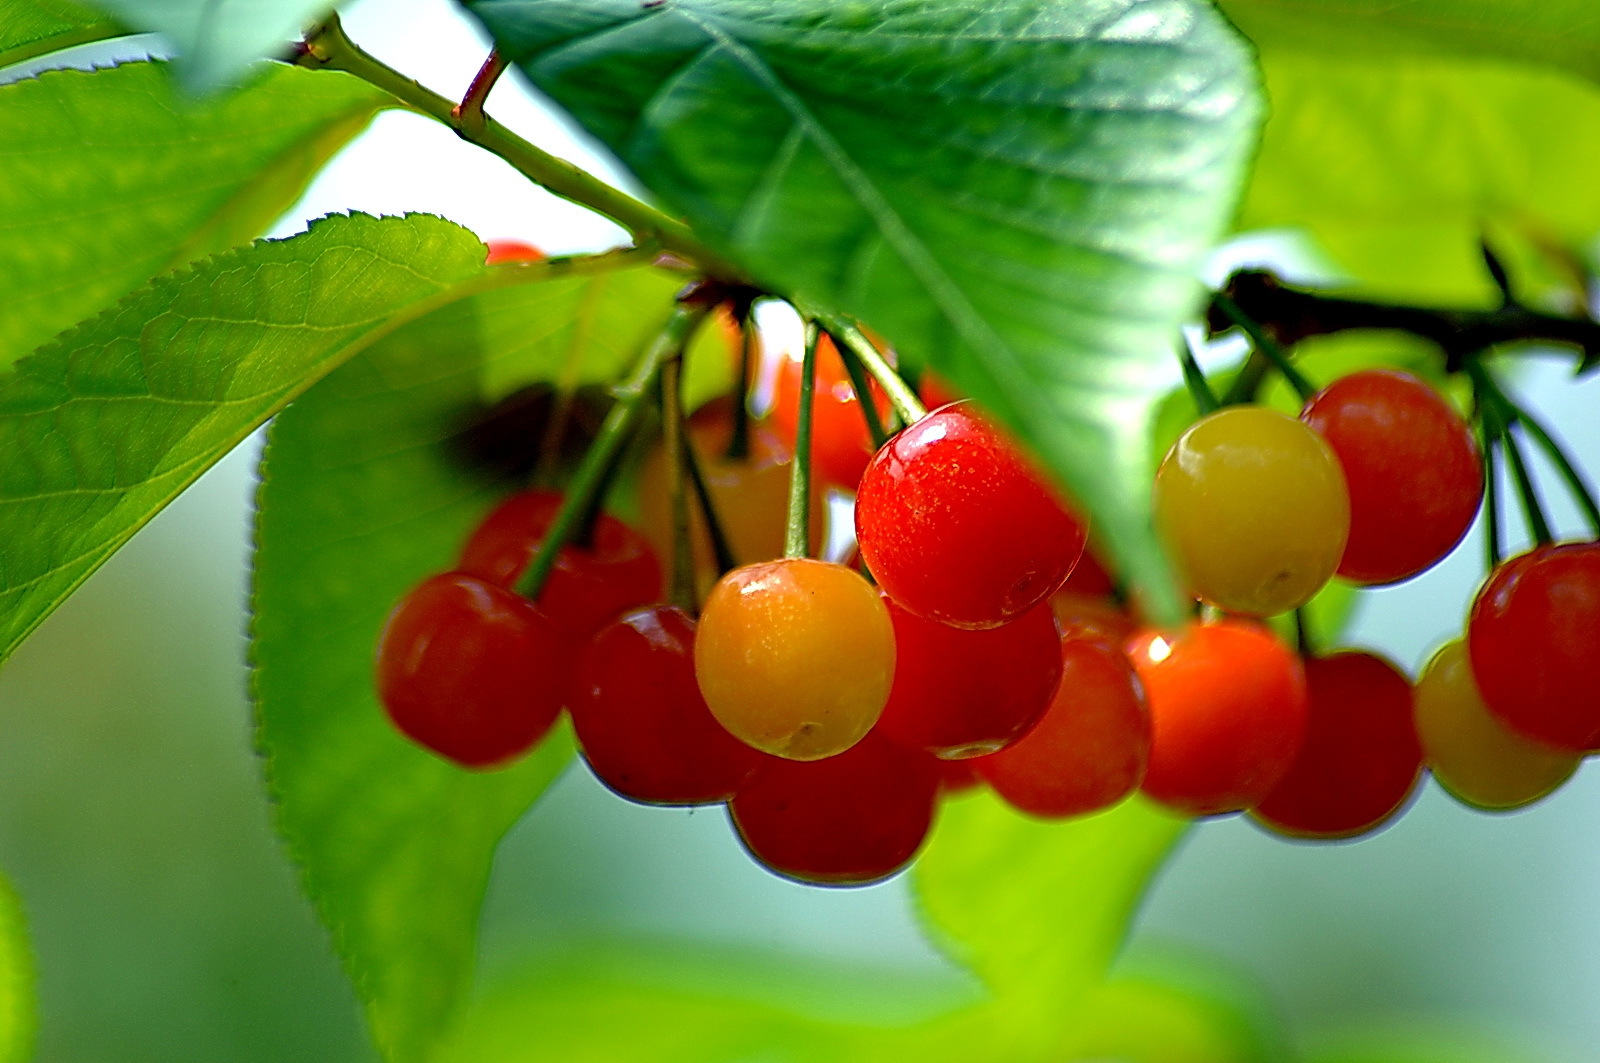 美国加州樱桃季即将启动 产量预计增至700-750万箱 | 国际果蔬报道